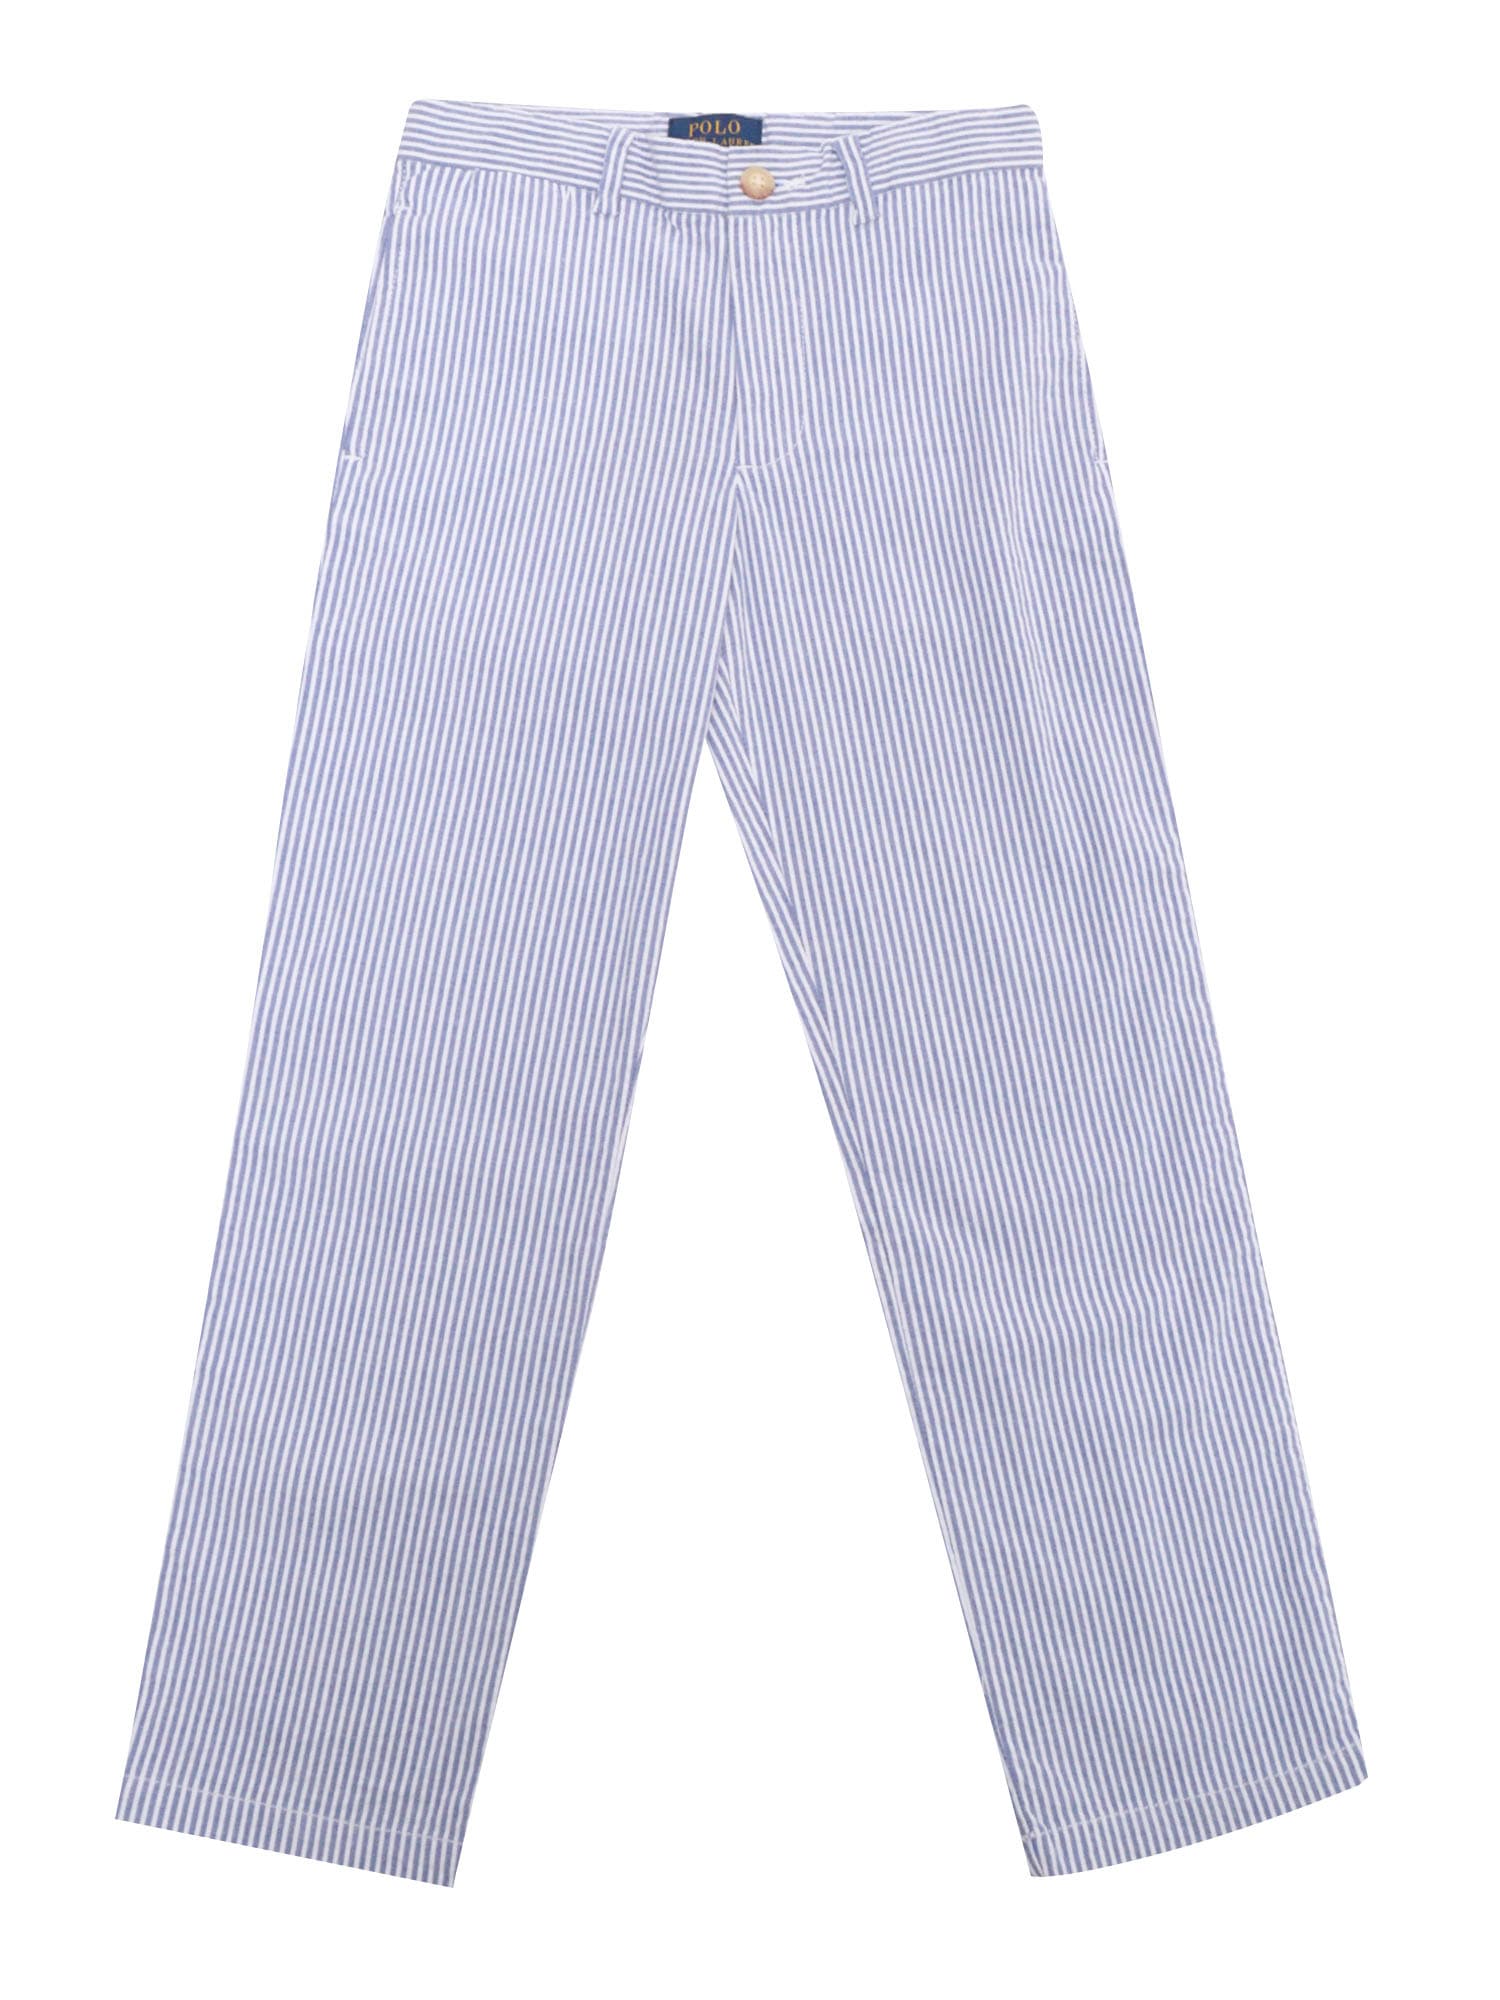 Polo Ralph Lauren Kids' Striped Trousers In Blue